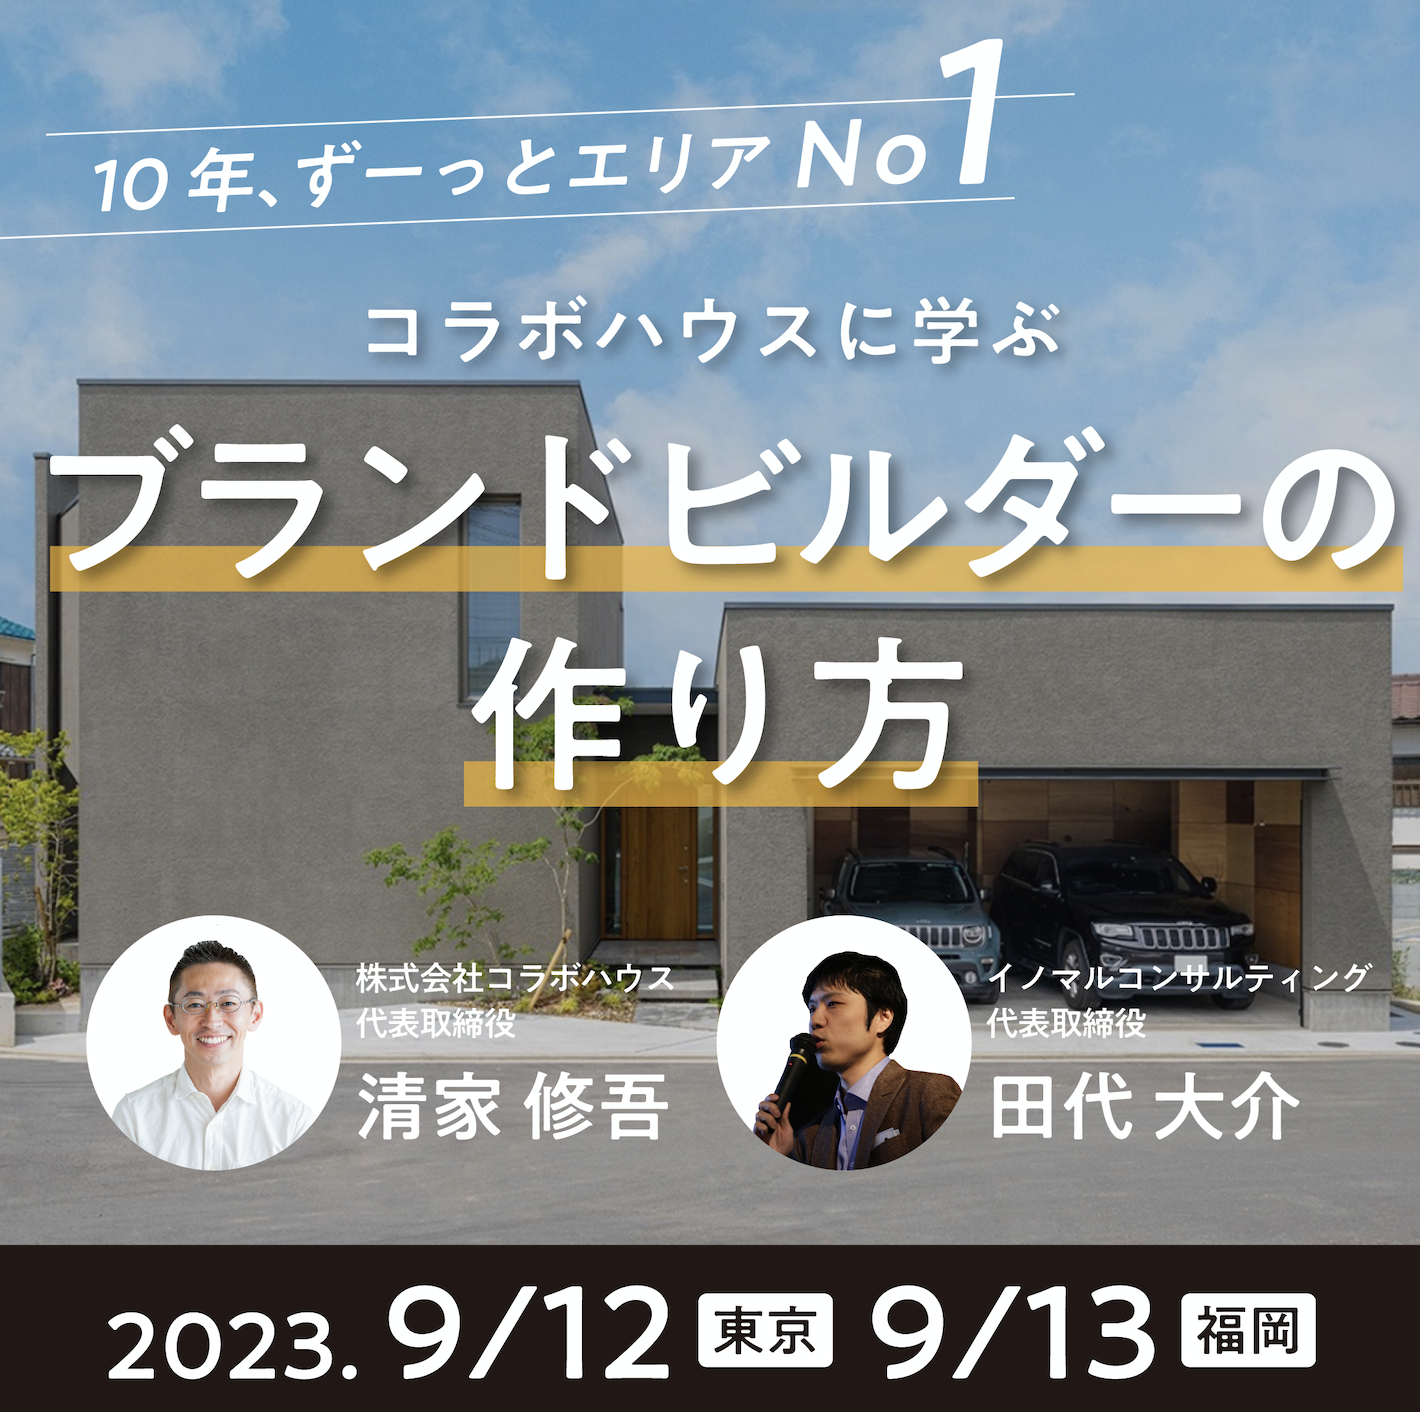 2023年9月12東京・13福岡 「ブランドビルダーの作り方」in コラボハウス